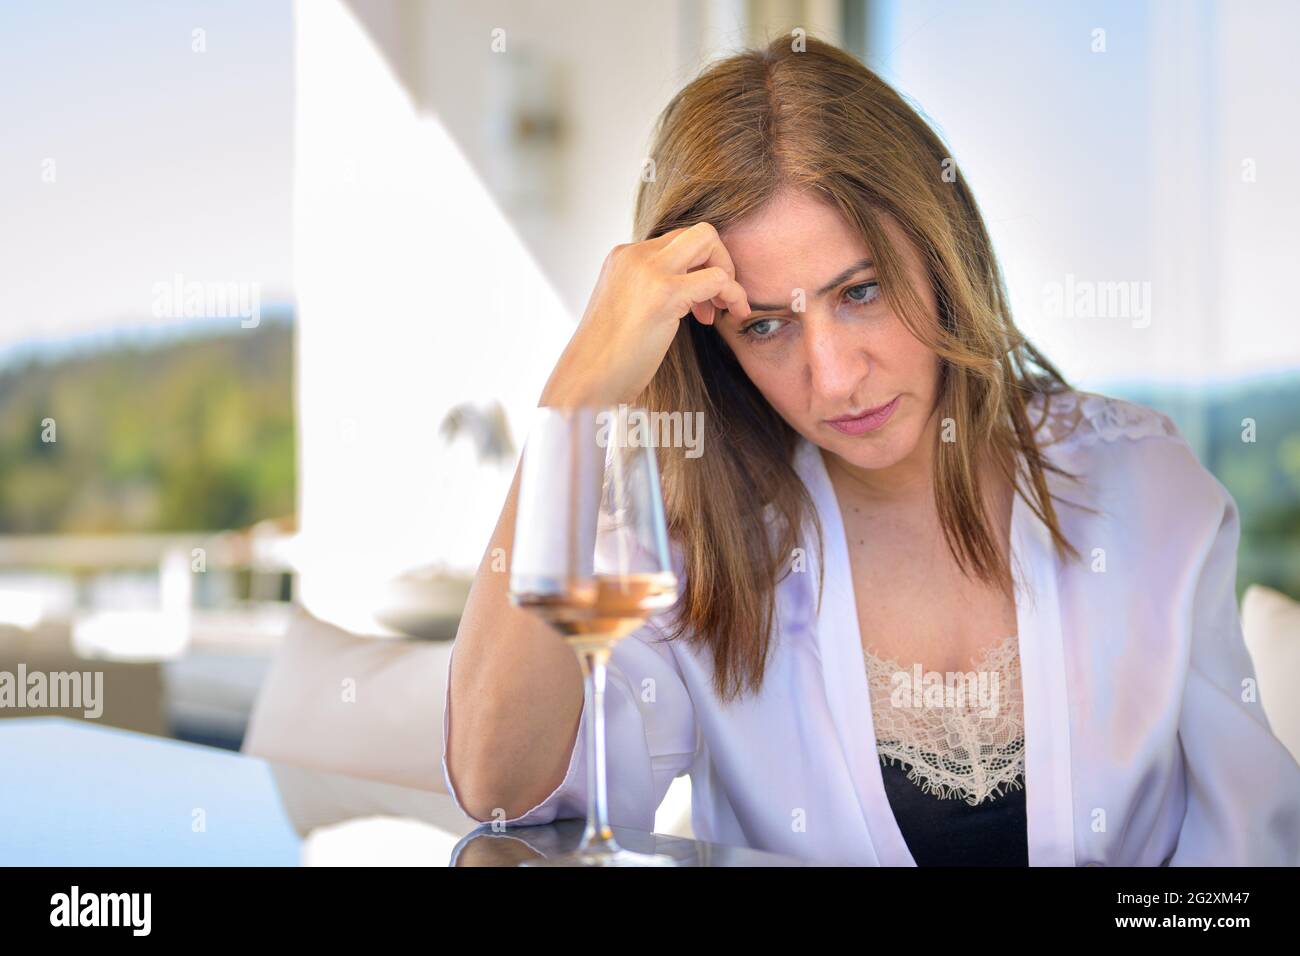 Depressive Frau, die tief mit einem Glas Rotwein vor ihr sitzt und ihre Stirn auf der Hand legt und auf den Tisch starrt Stockfoto